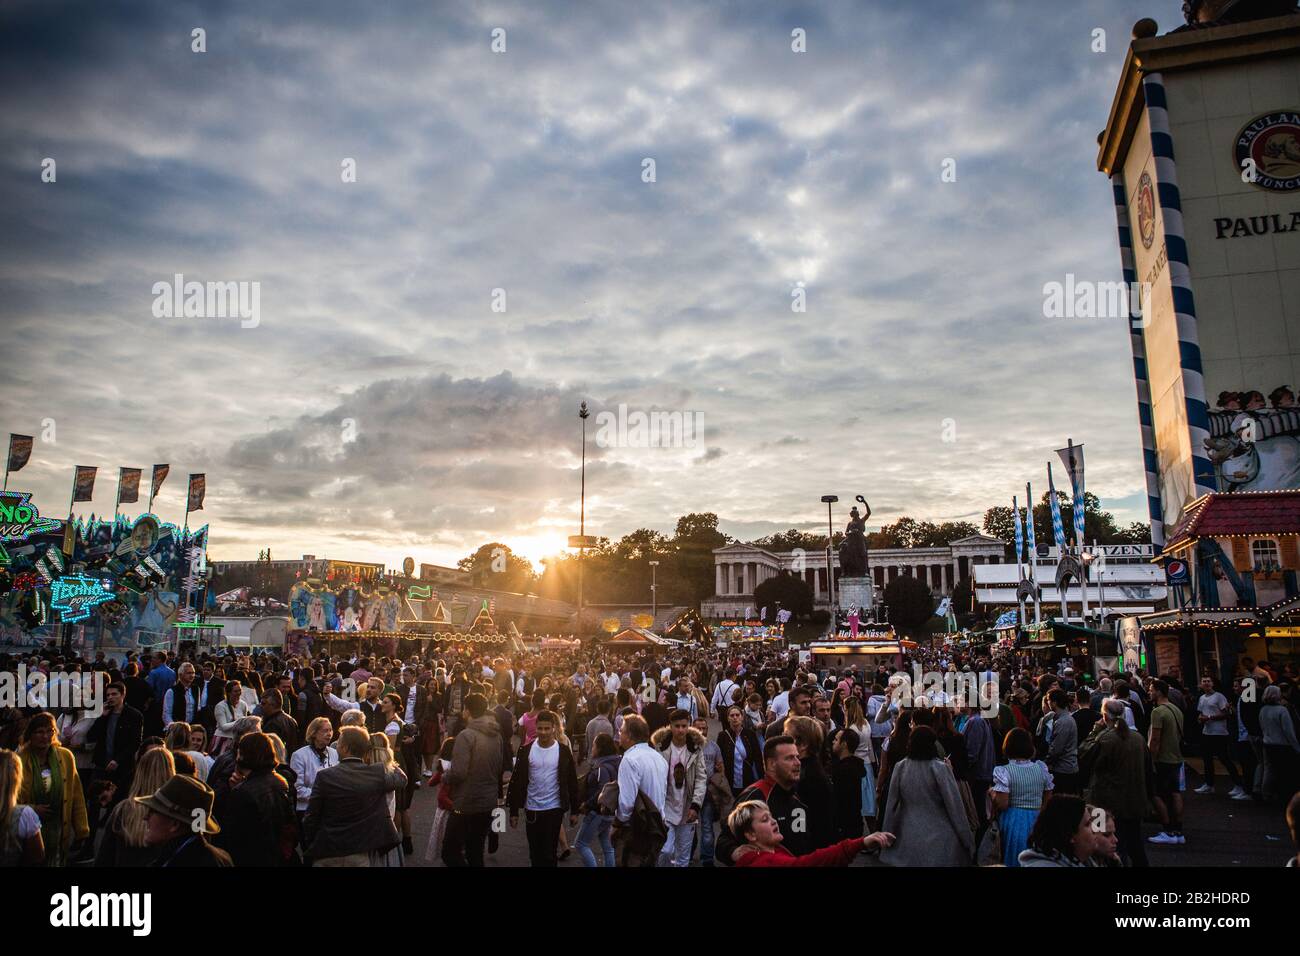 El sol se pone sobre el recinto ferial de Oktoberfest, mientras cientos de personas celebran el festival de la cerveza bávara en Múnich con mucha comida, cerveza y diversión. Foto de stock